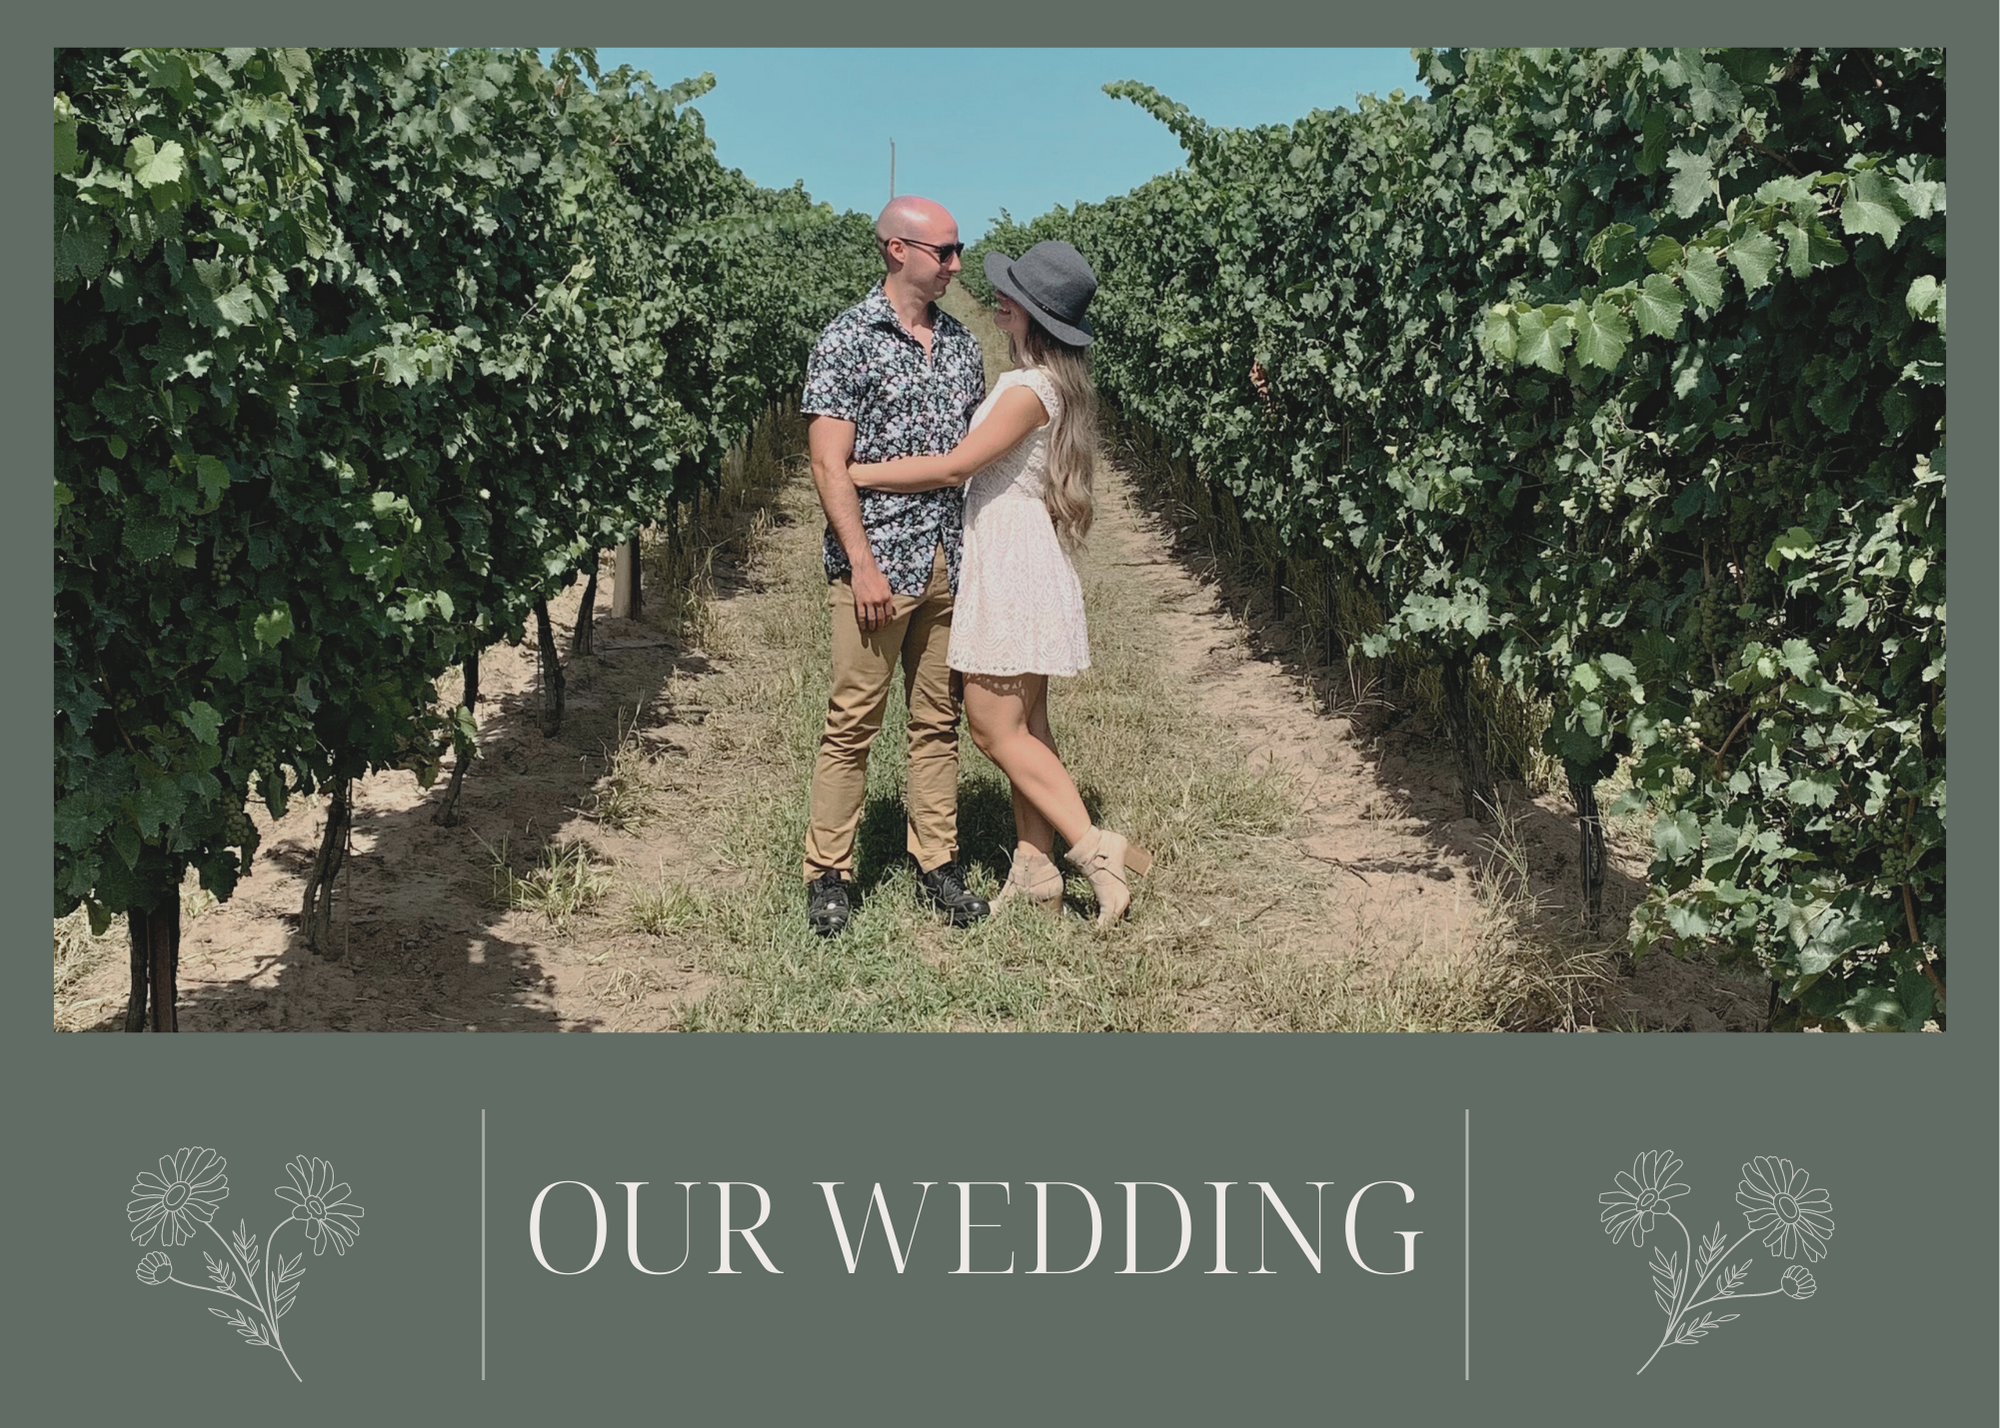 The Wedding Website of Émilie O’Brien and Jacob Ventura